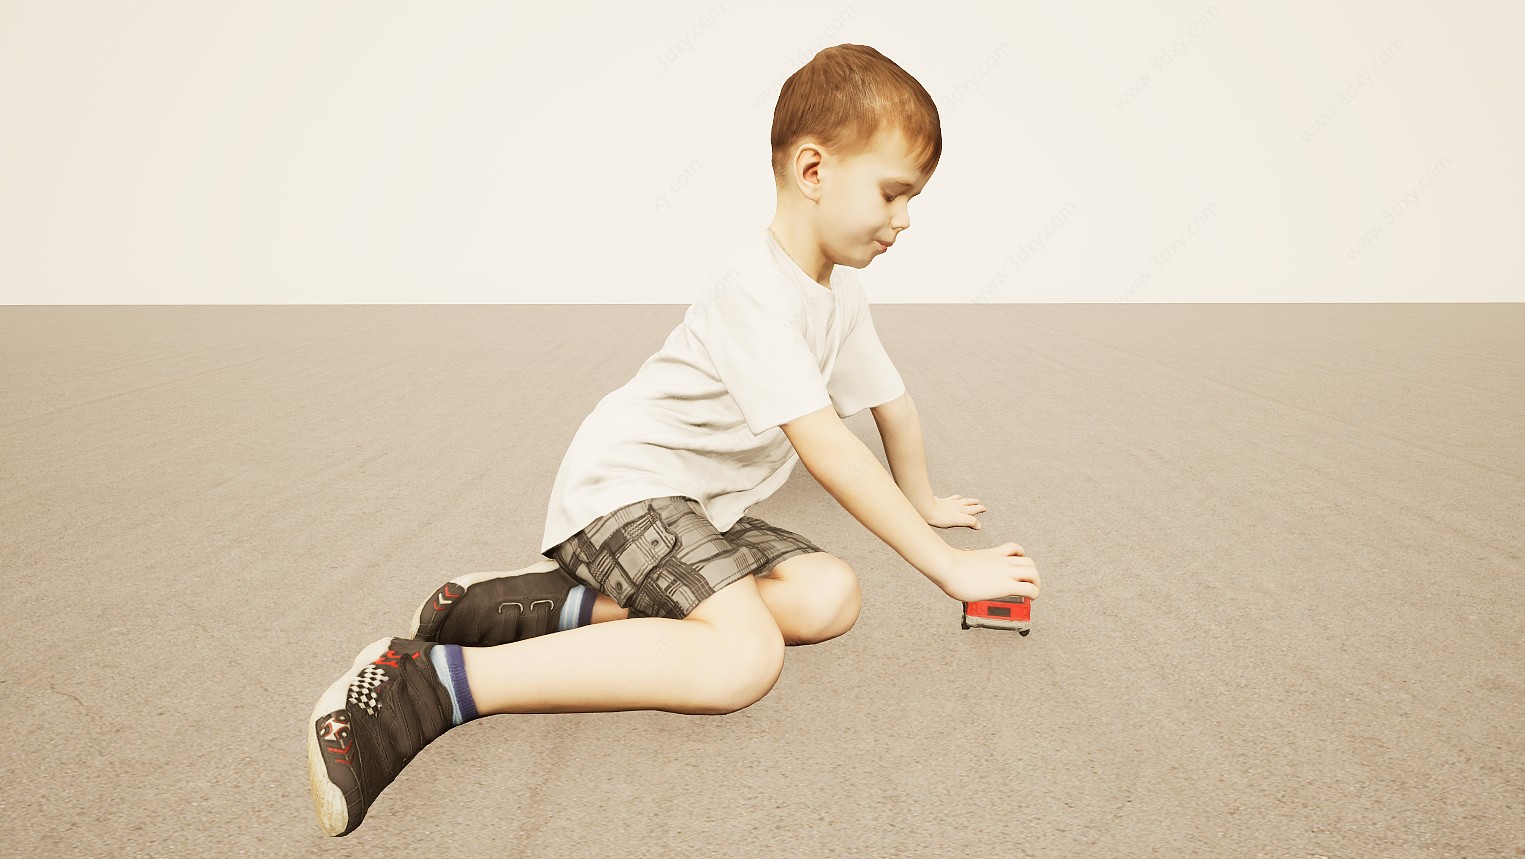 地板玩车玩具欧洲小男孩3D模型